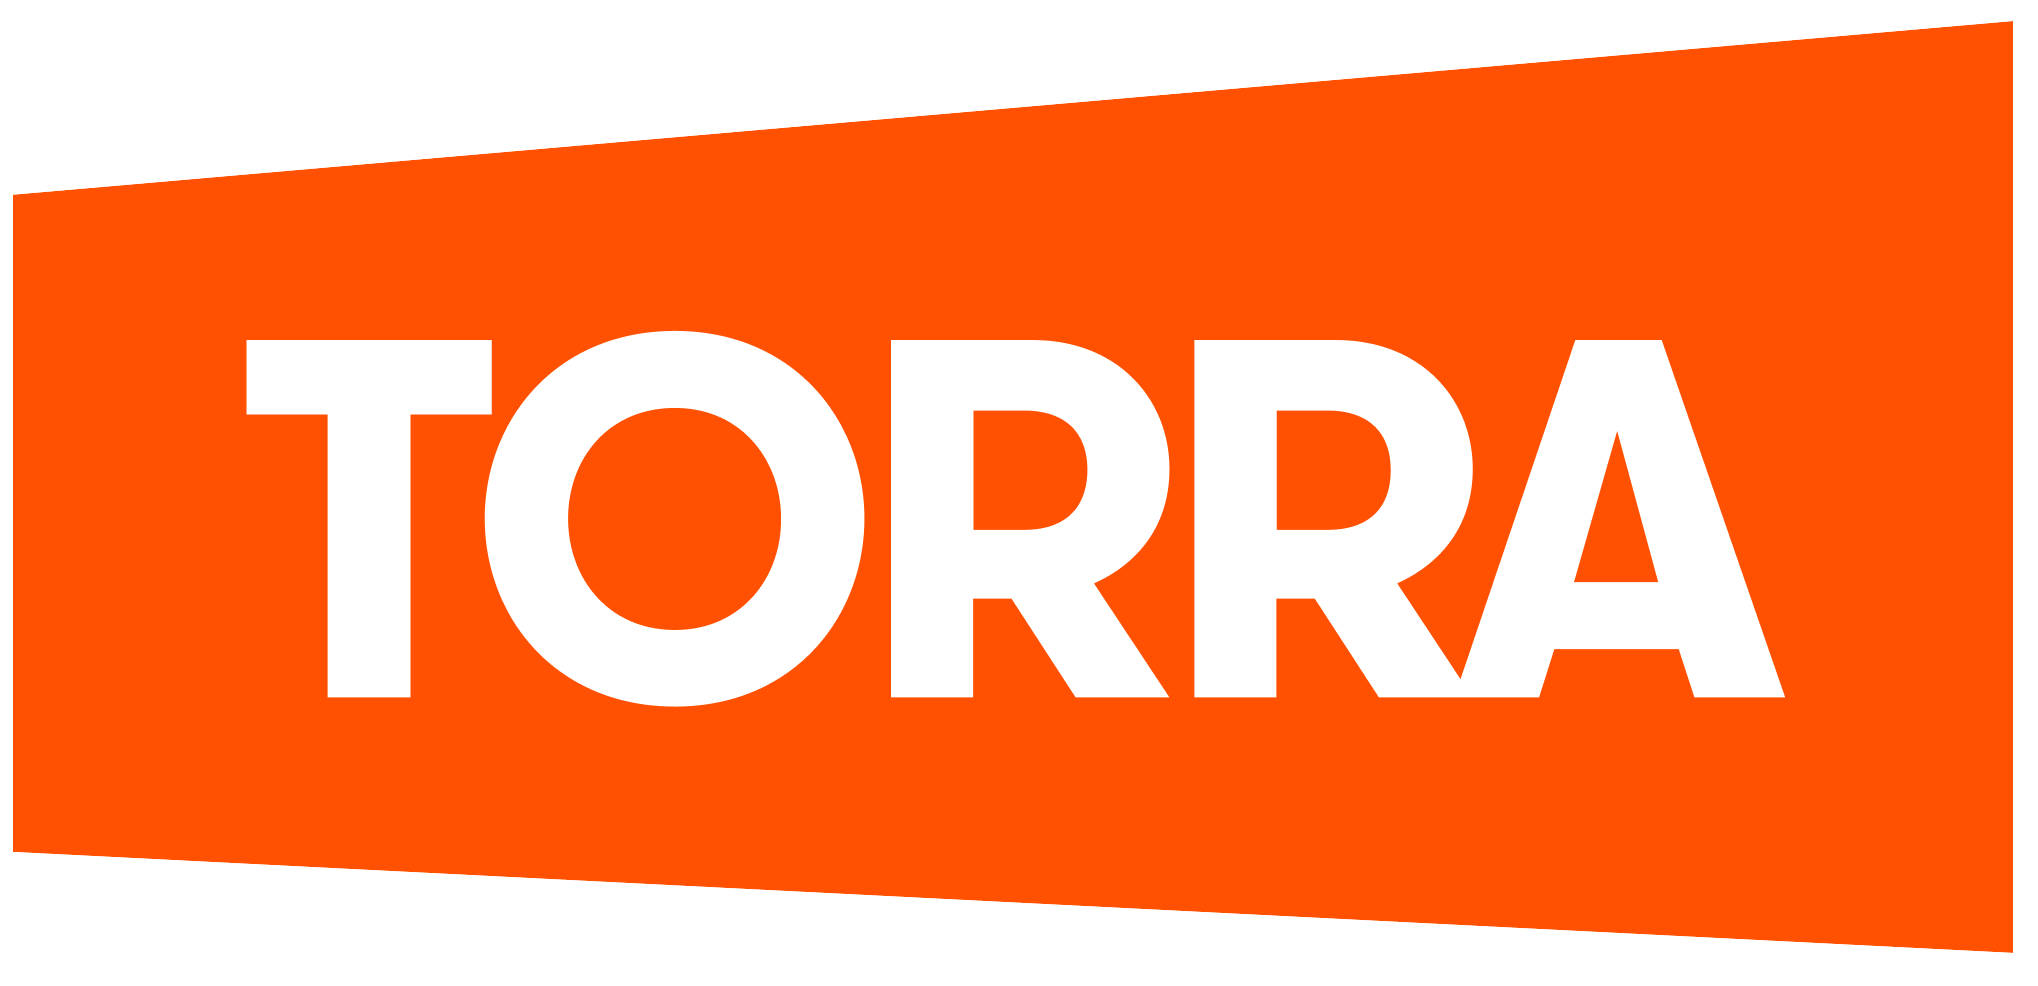 Logo das lojas Torra